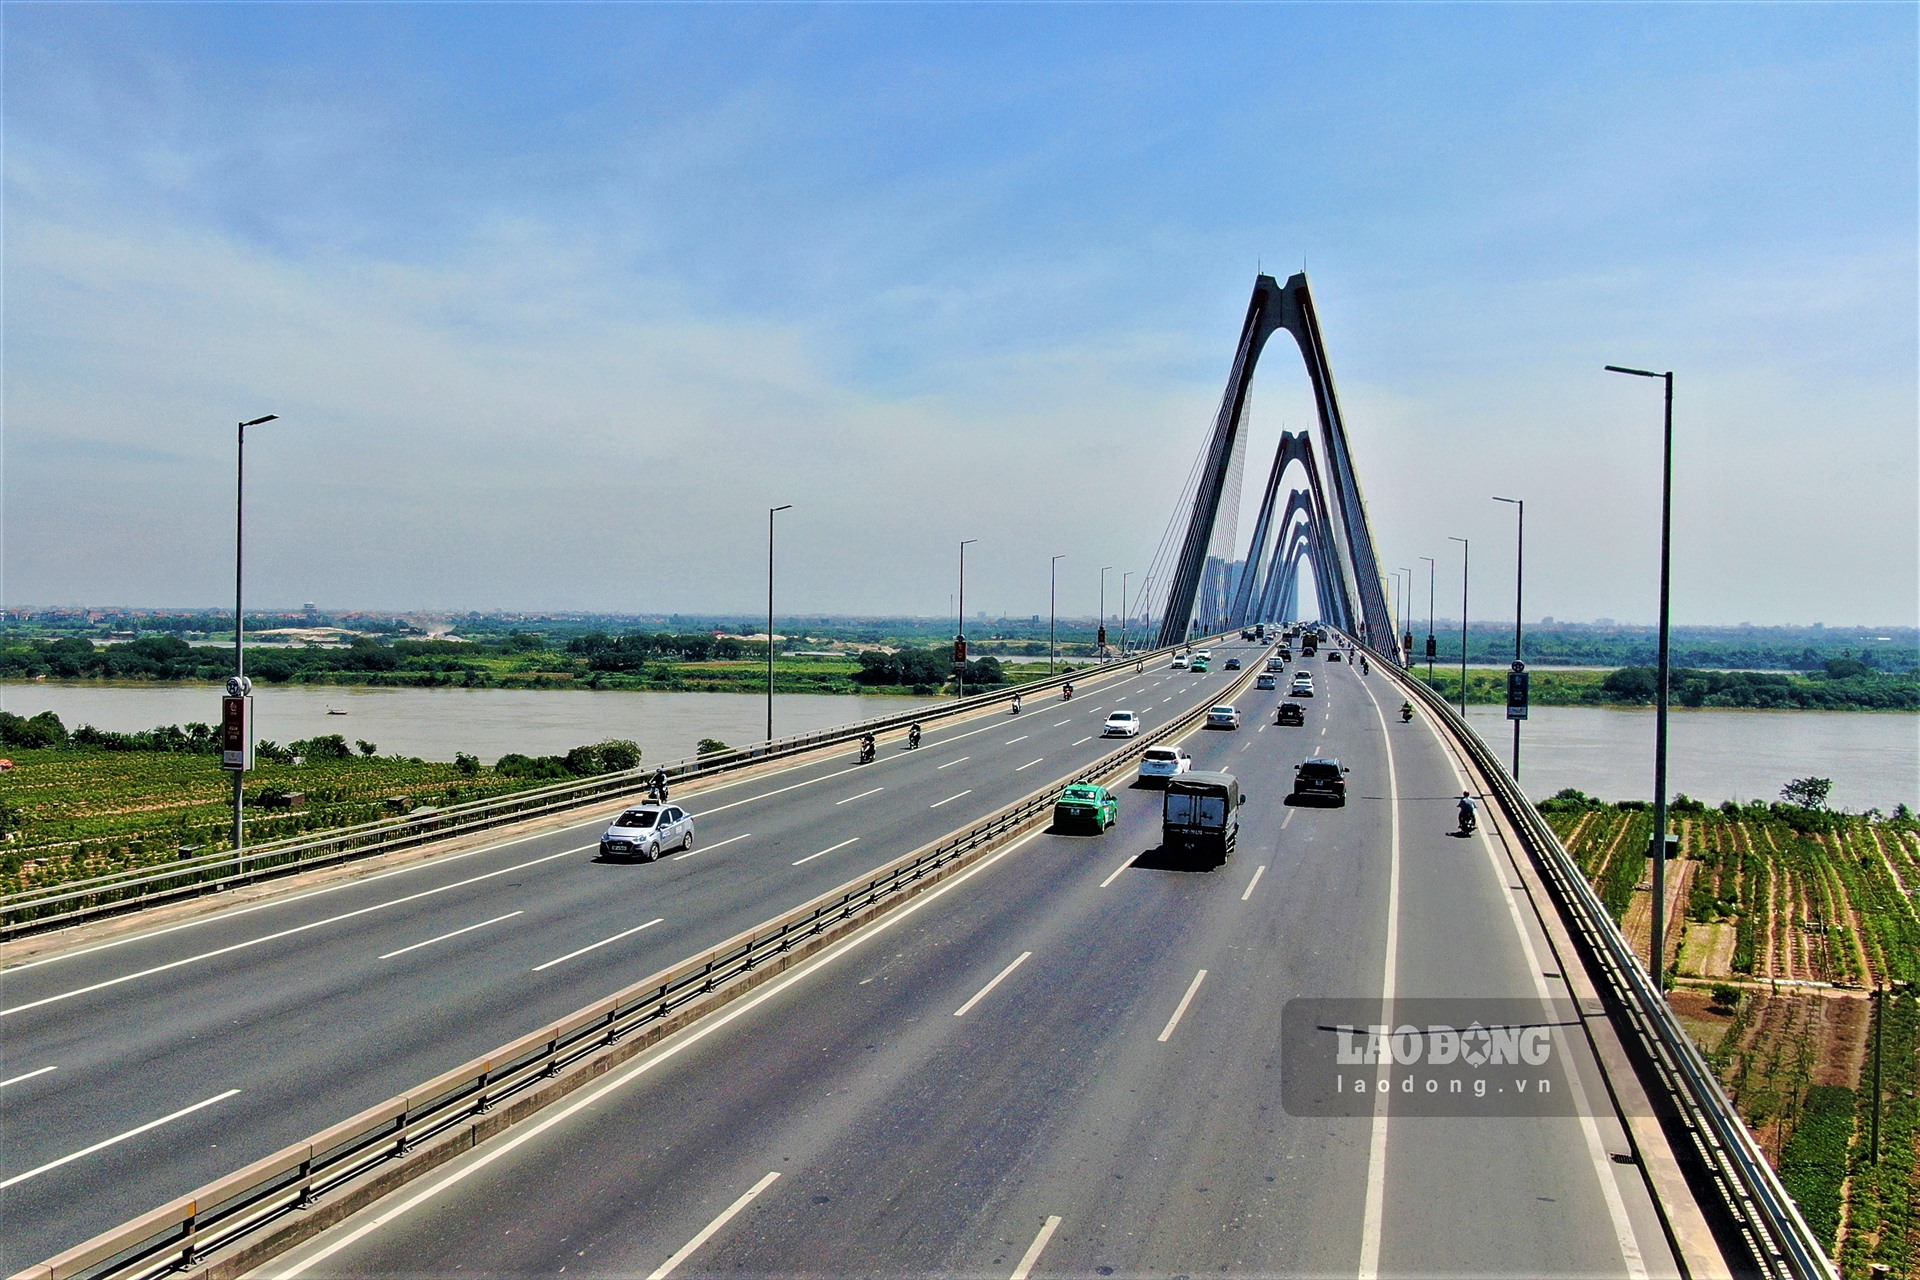 Cầu Nhật Tân là cây cầu dây văng lớn thứ 2 ở Việt Nam ở thời điểm hiện tại. Cầu được xây dựng với tổng mức đầu tư hơn 13.626 tỉ đồng.